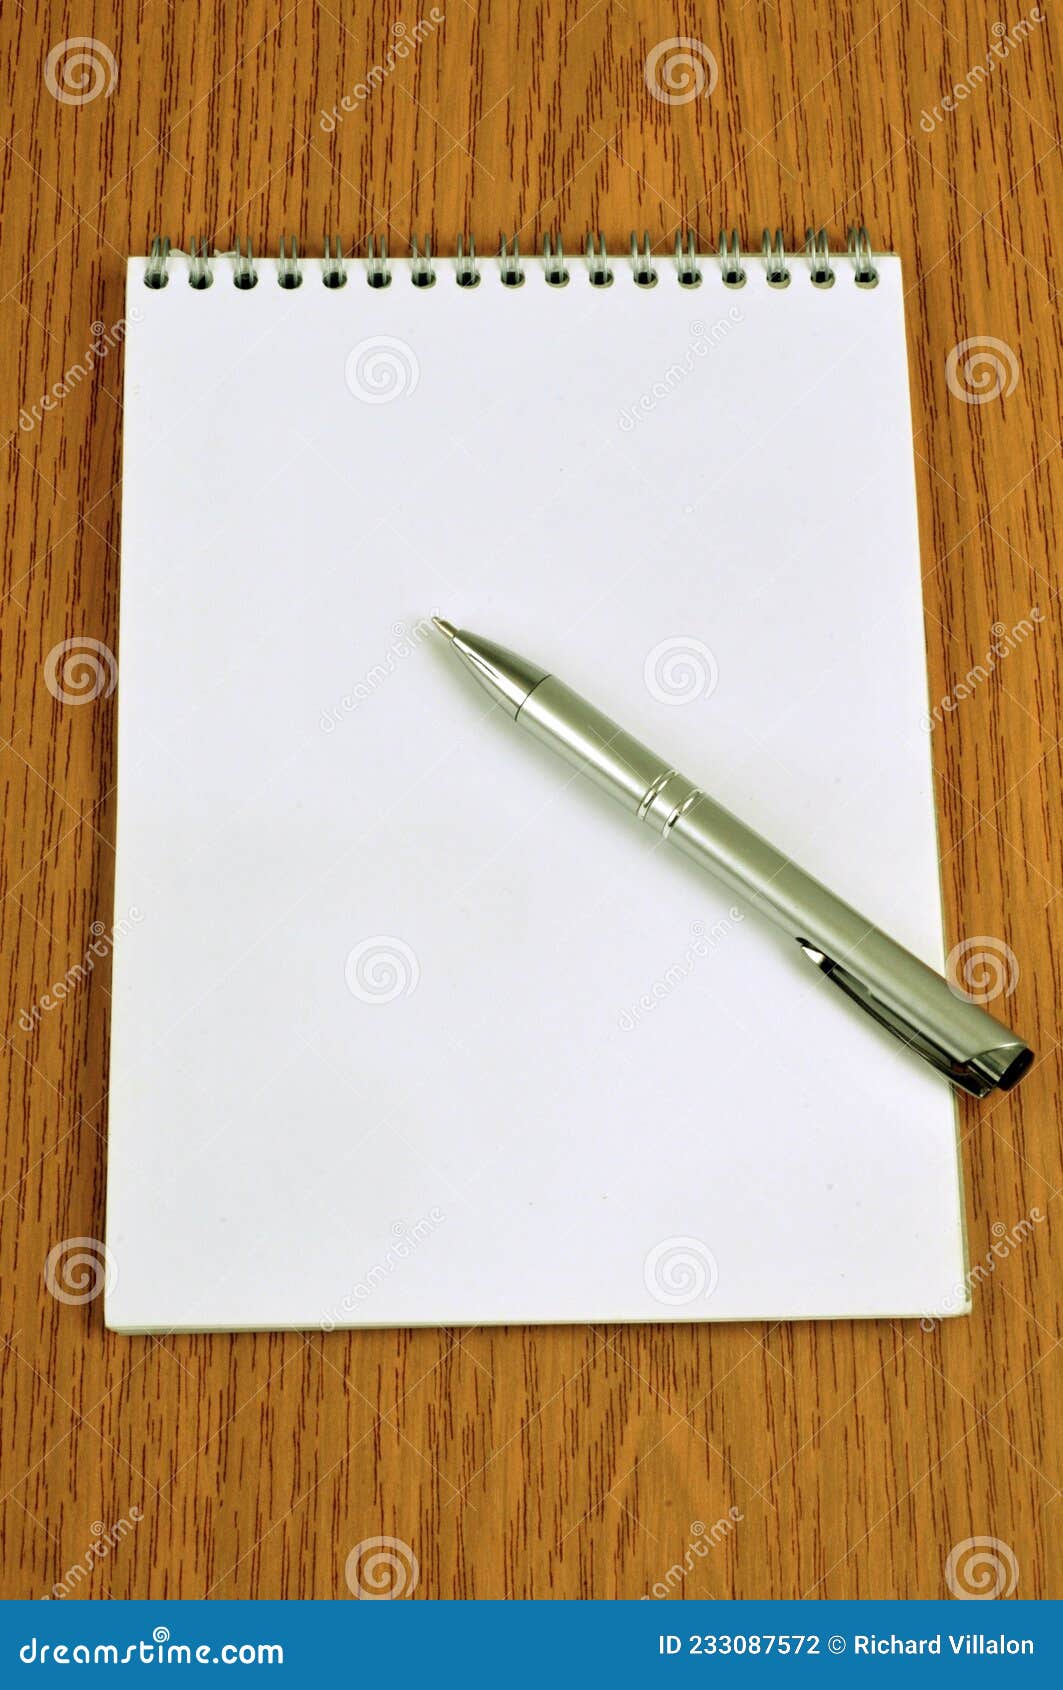 pen lying on a notepad | stylo posÃÂ© sur un bloc-notes